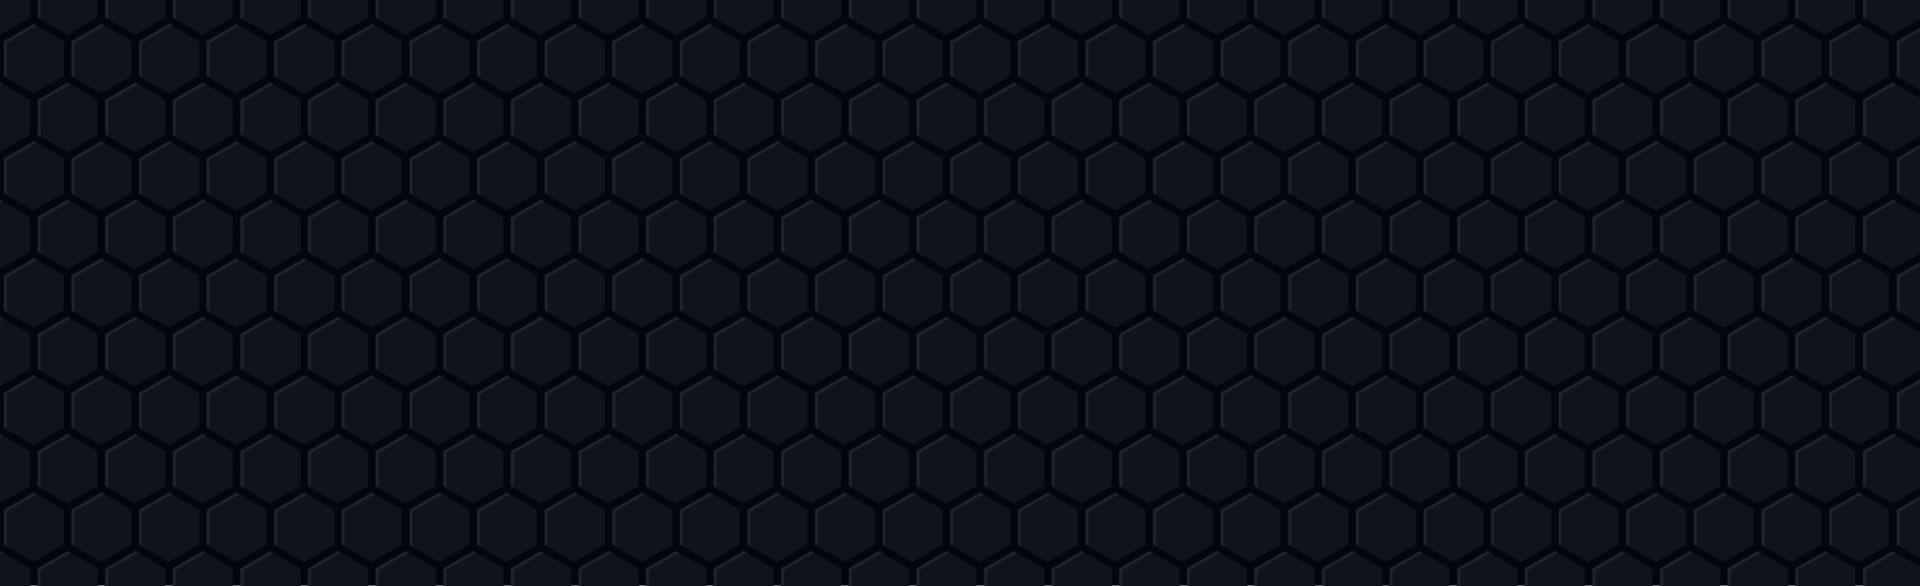 hexagones sombres sur fond noir - vecteur